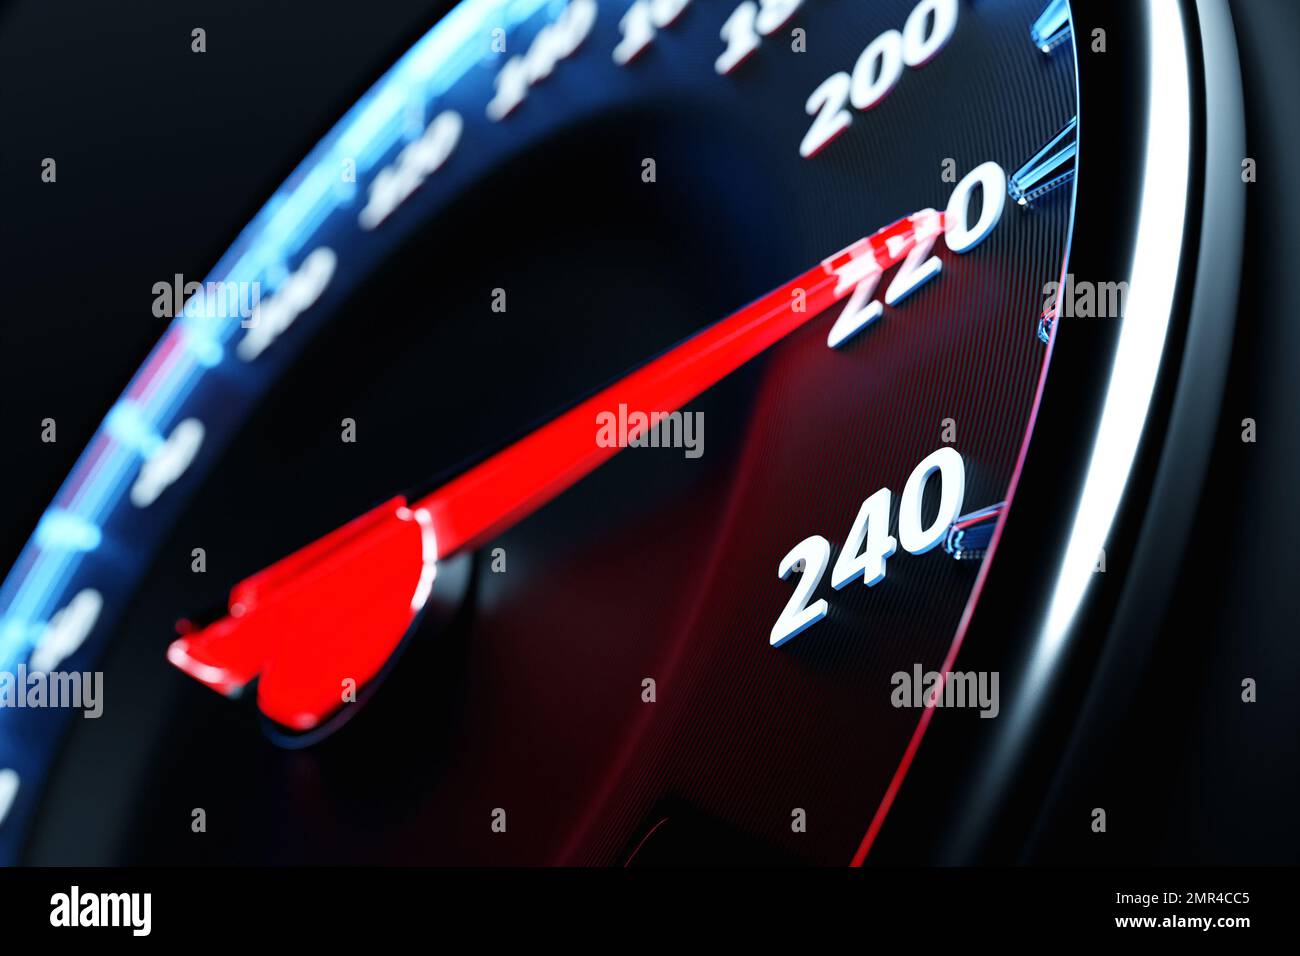 Illustrazione 3D primo piano pannello auto nero, tachimetro luminoso digitale in stile sportivo. L'ago del tachimetro indica una velocità massima di 220 km / h. Foto Stock